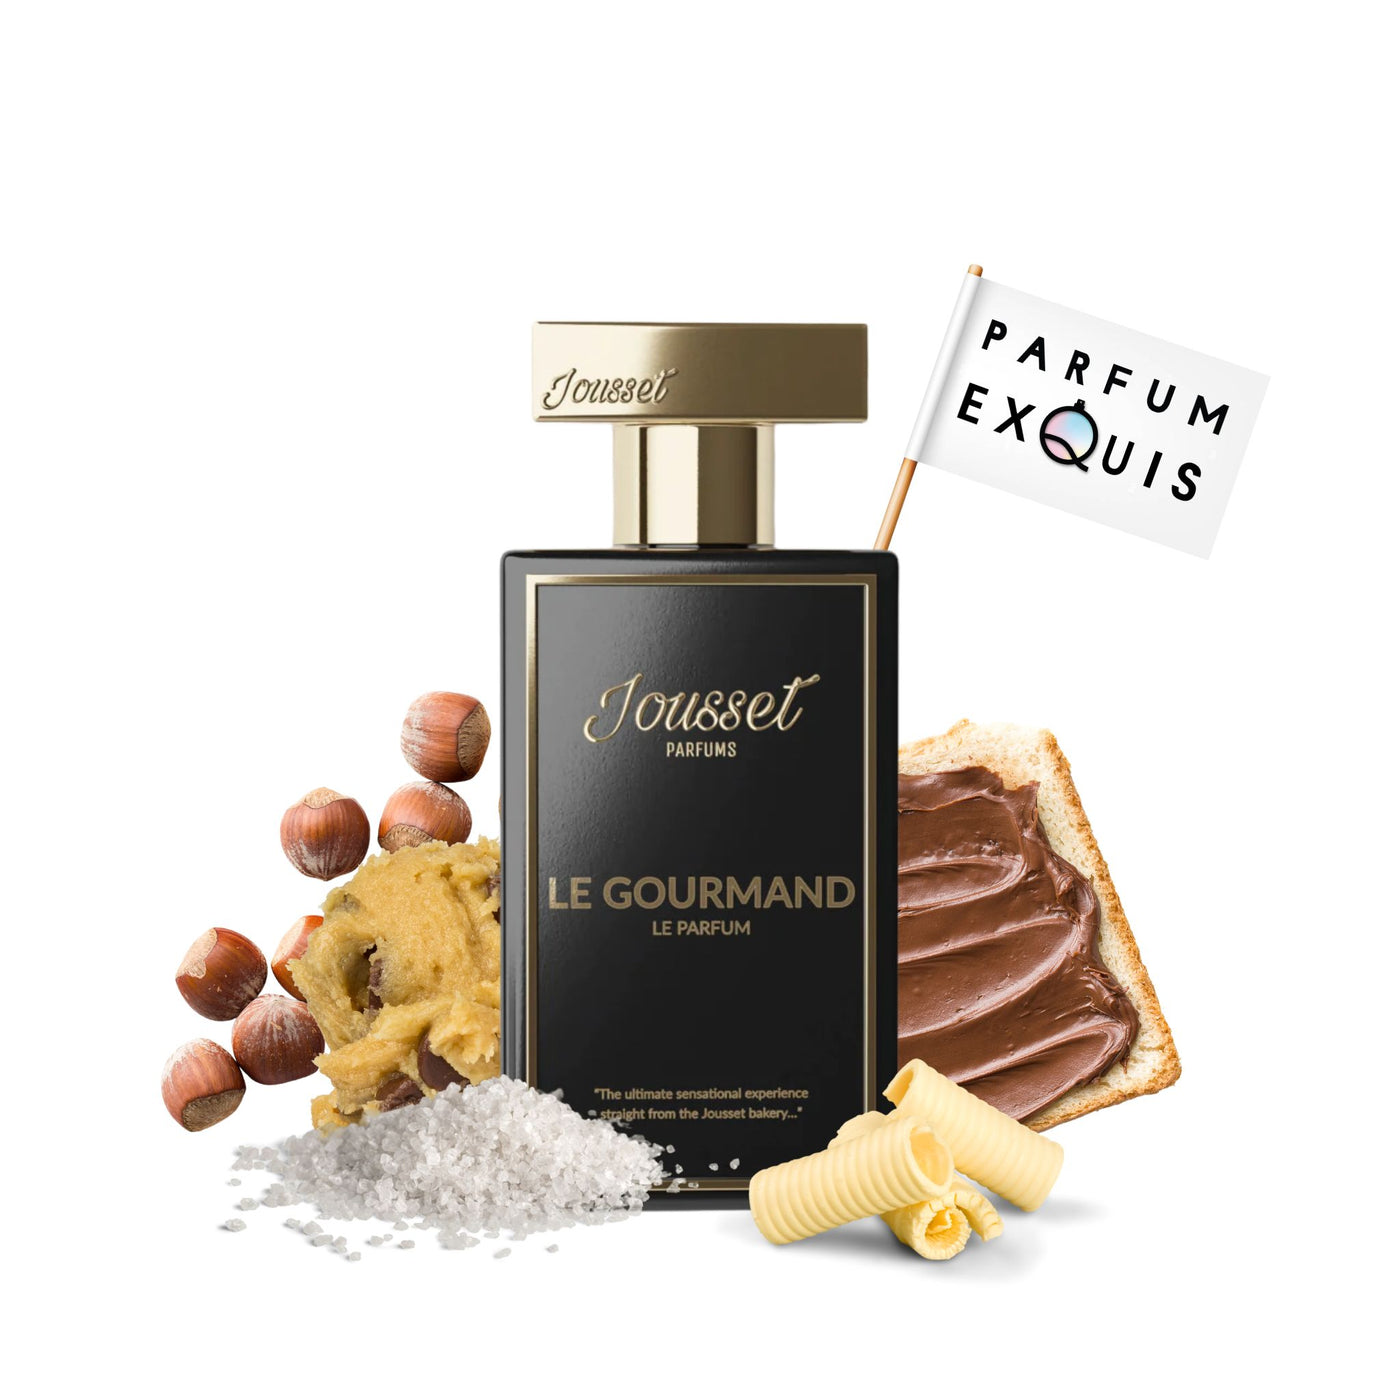 Gourmand Bakhoor Extrait de Parfum by Jousset Parfums